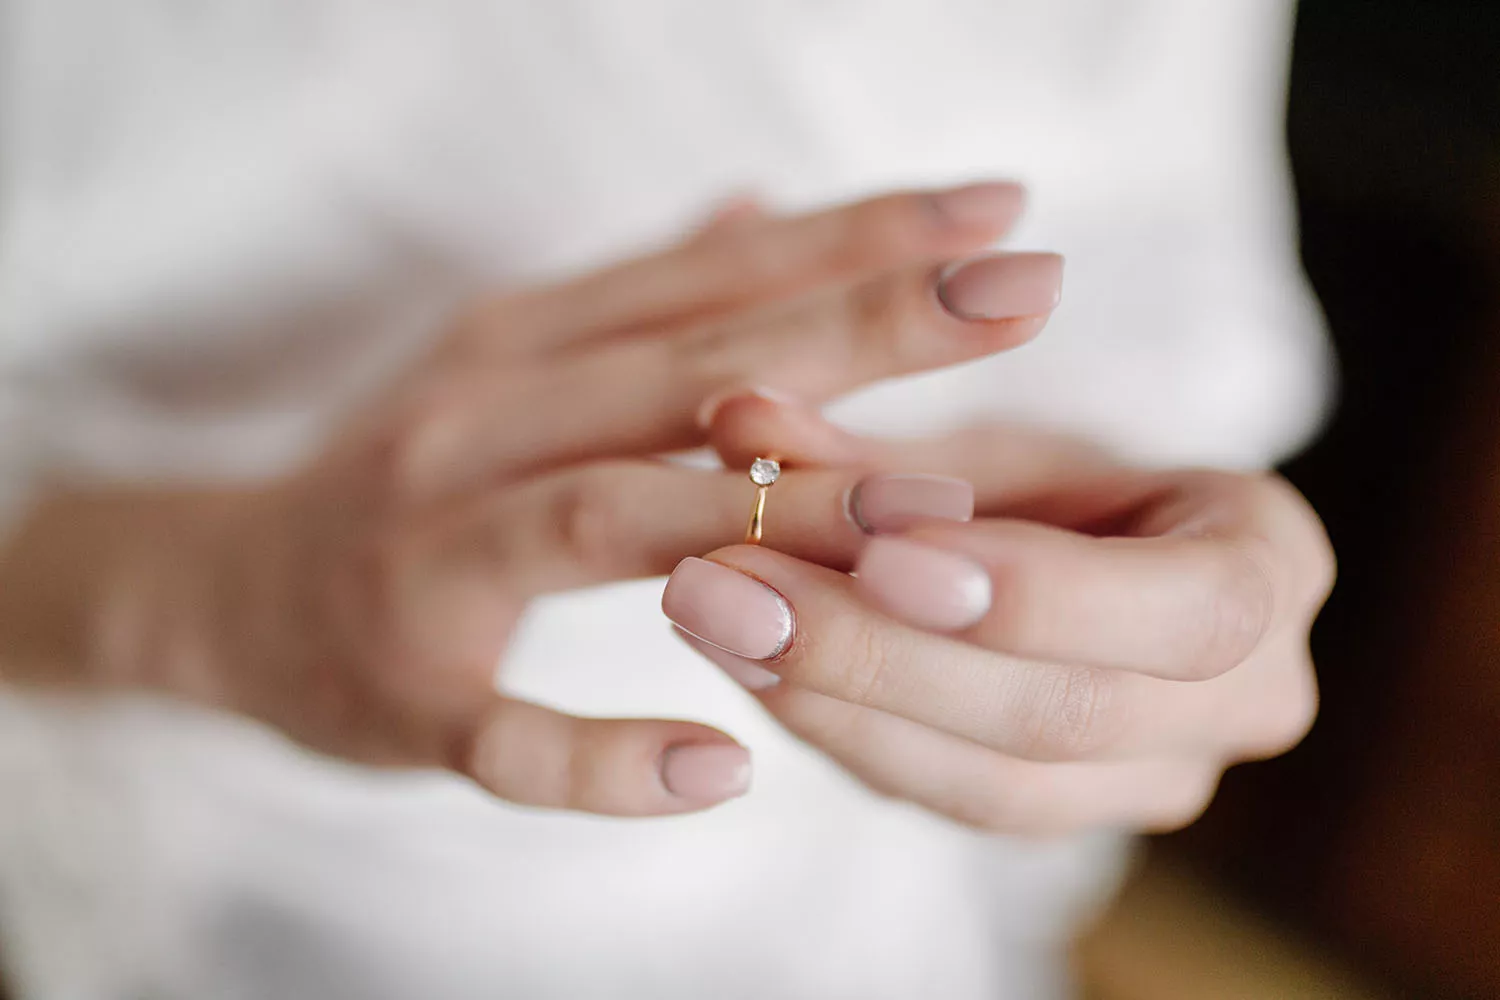 時常取下和戴上戒指會增加金屬與肌膚的摩擦。